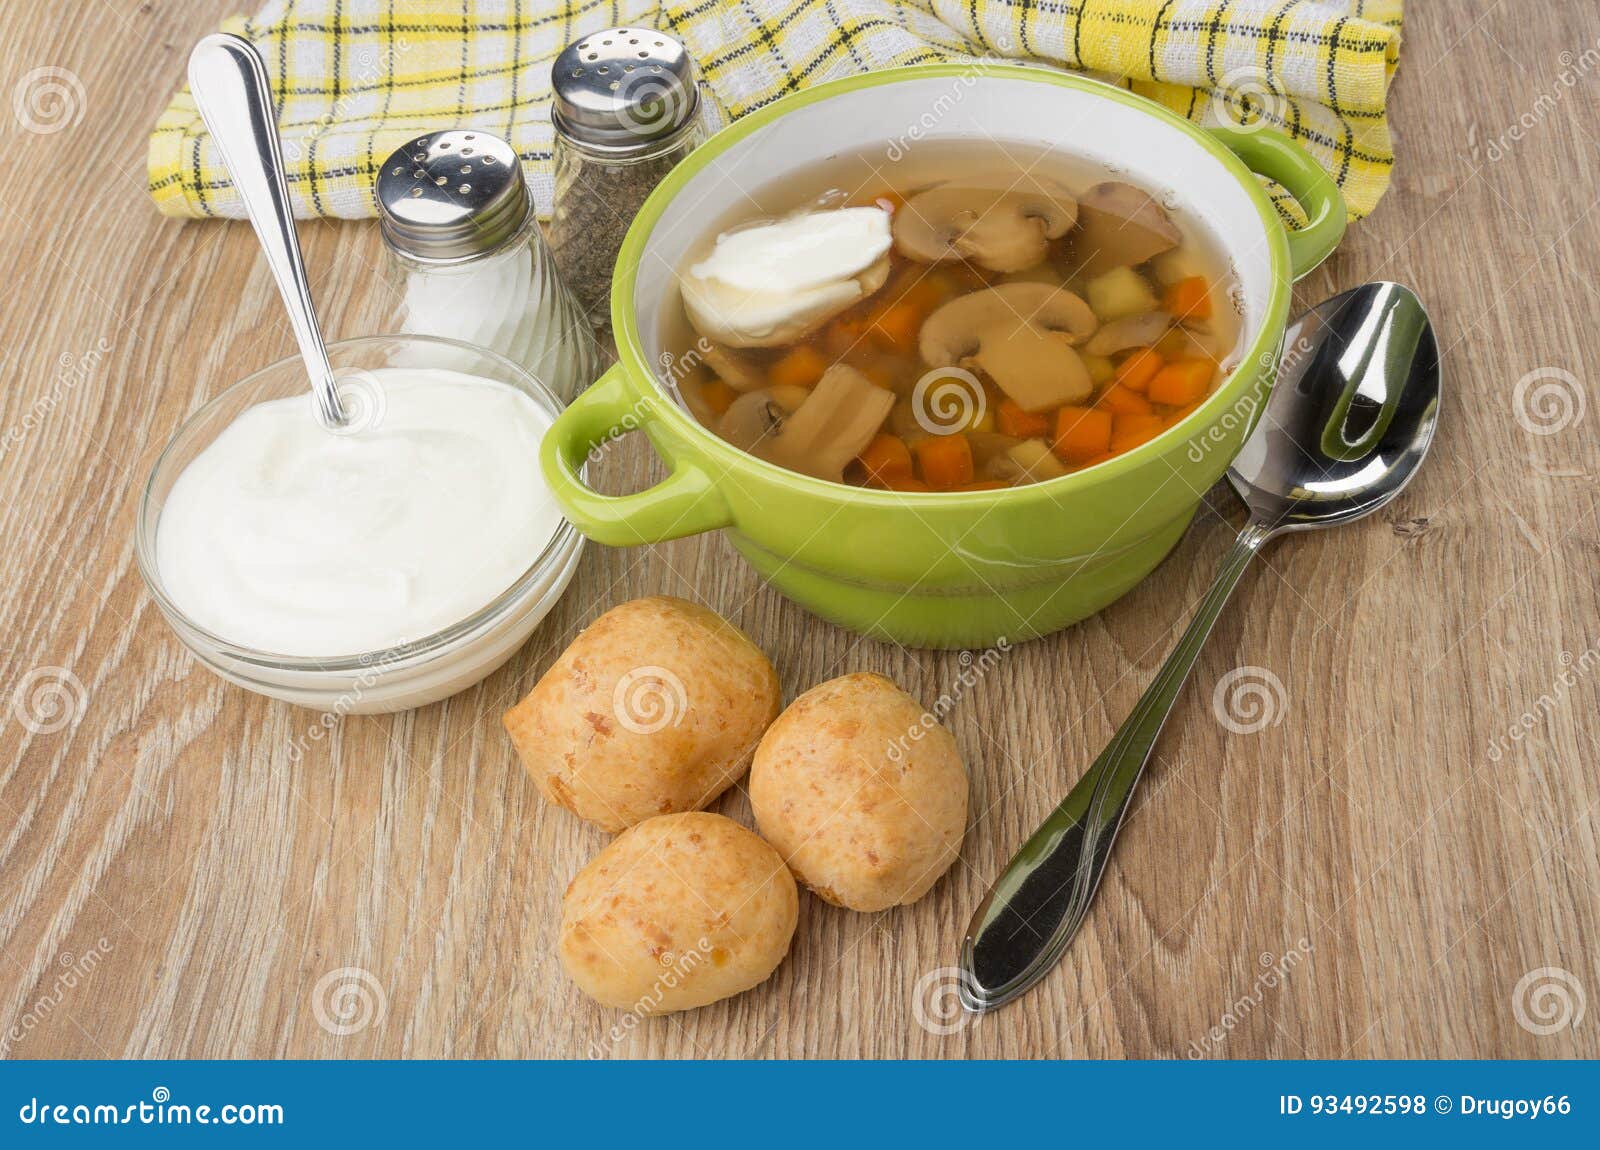 Suppe Mit Pilzen Und Sauerrahm, Brot, Salz, Pfeffer Stockfoto - Bild ...